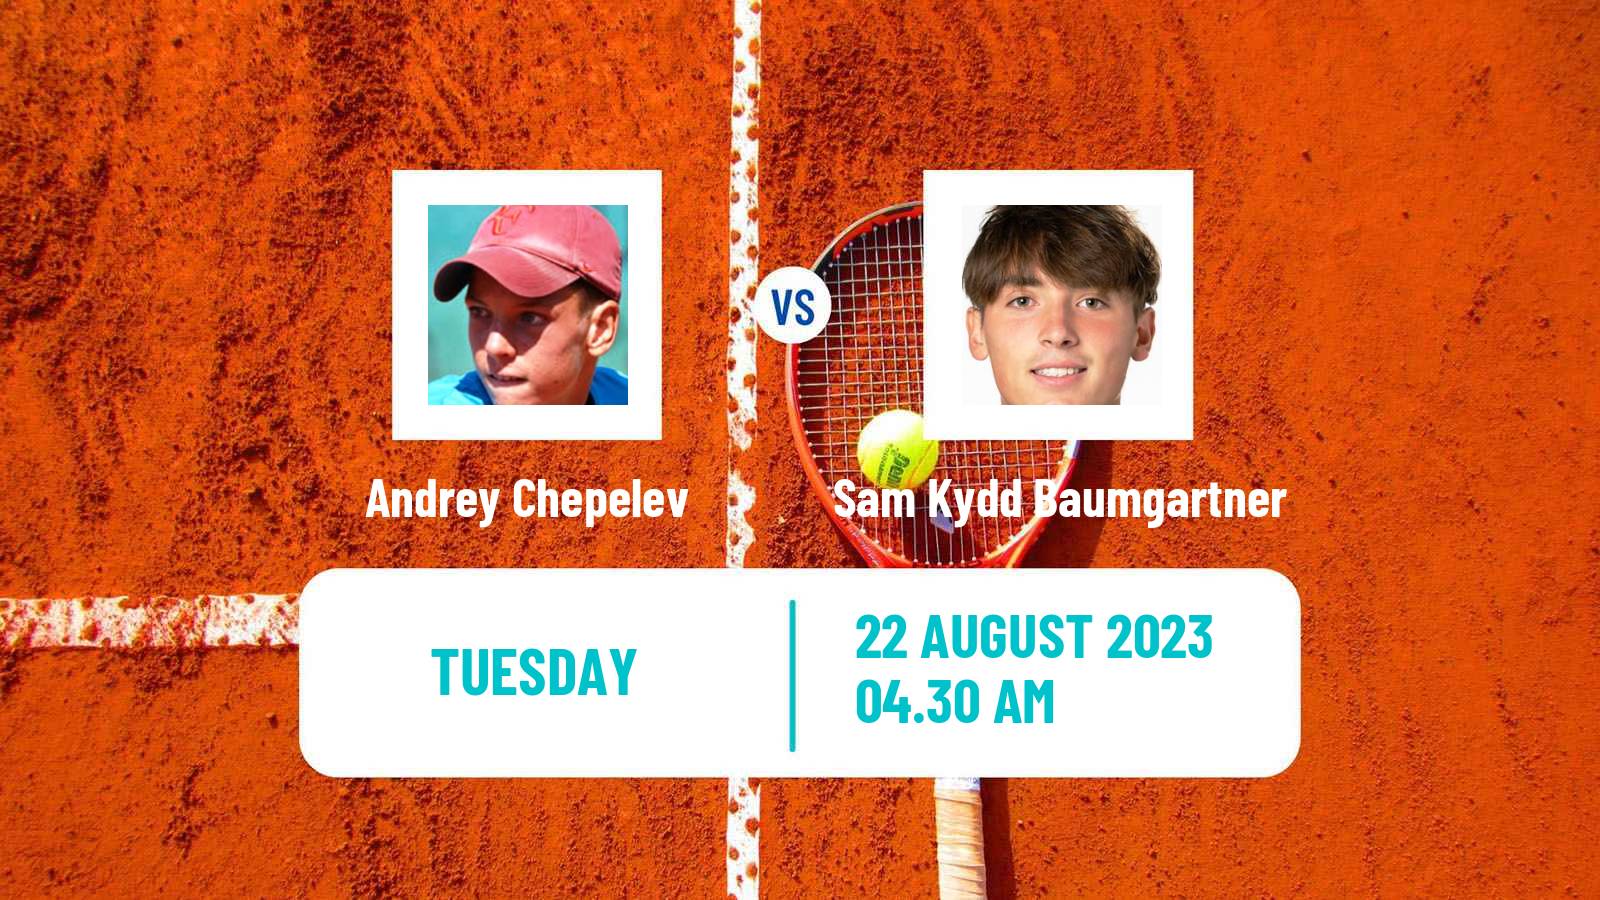 Tennis ITF M15 Caslano Men Andrey Chepelev - Sam Kydd Baumgartner